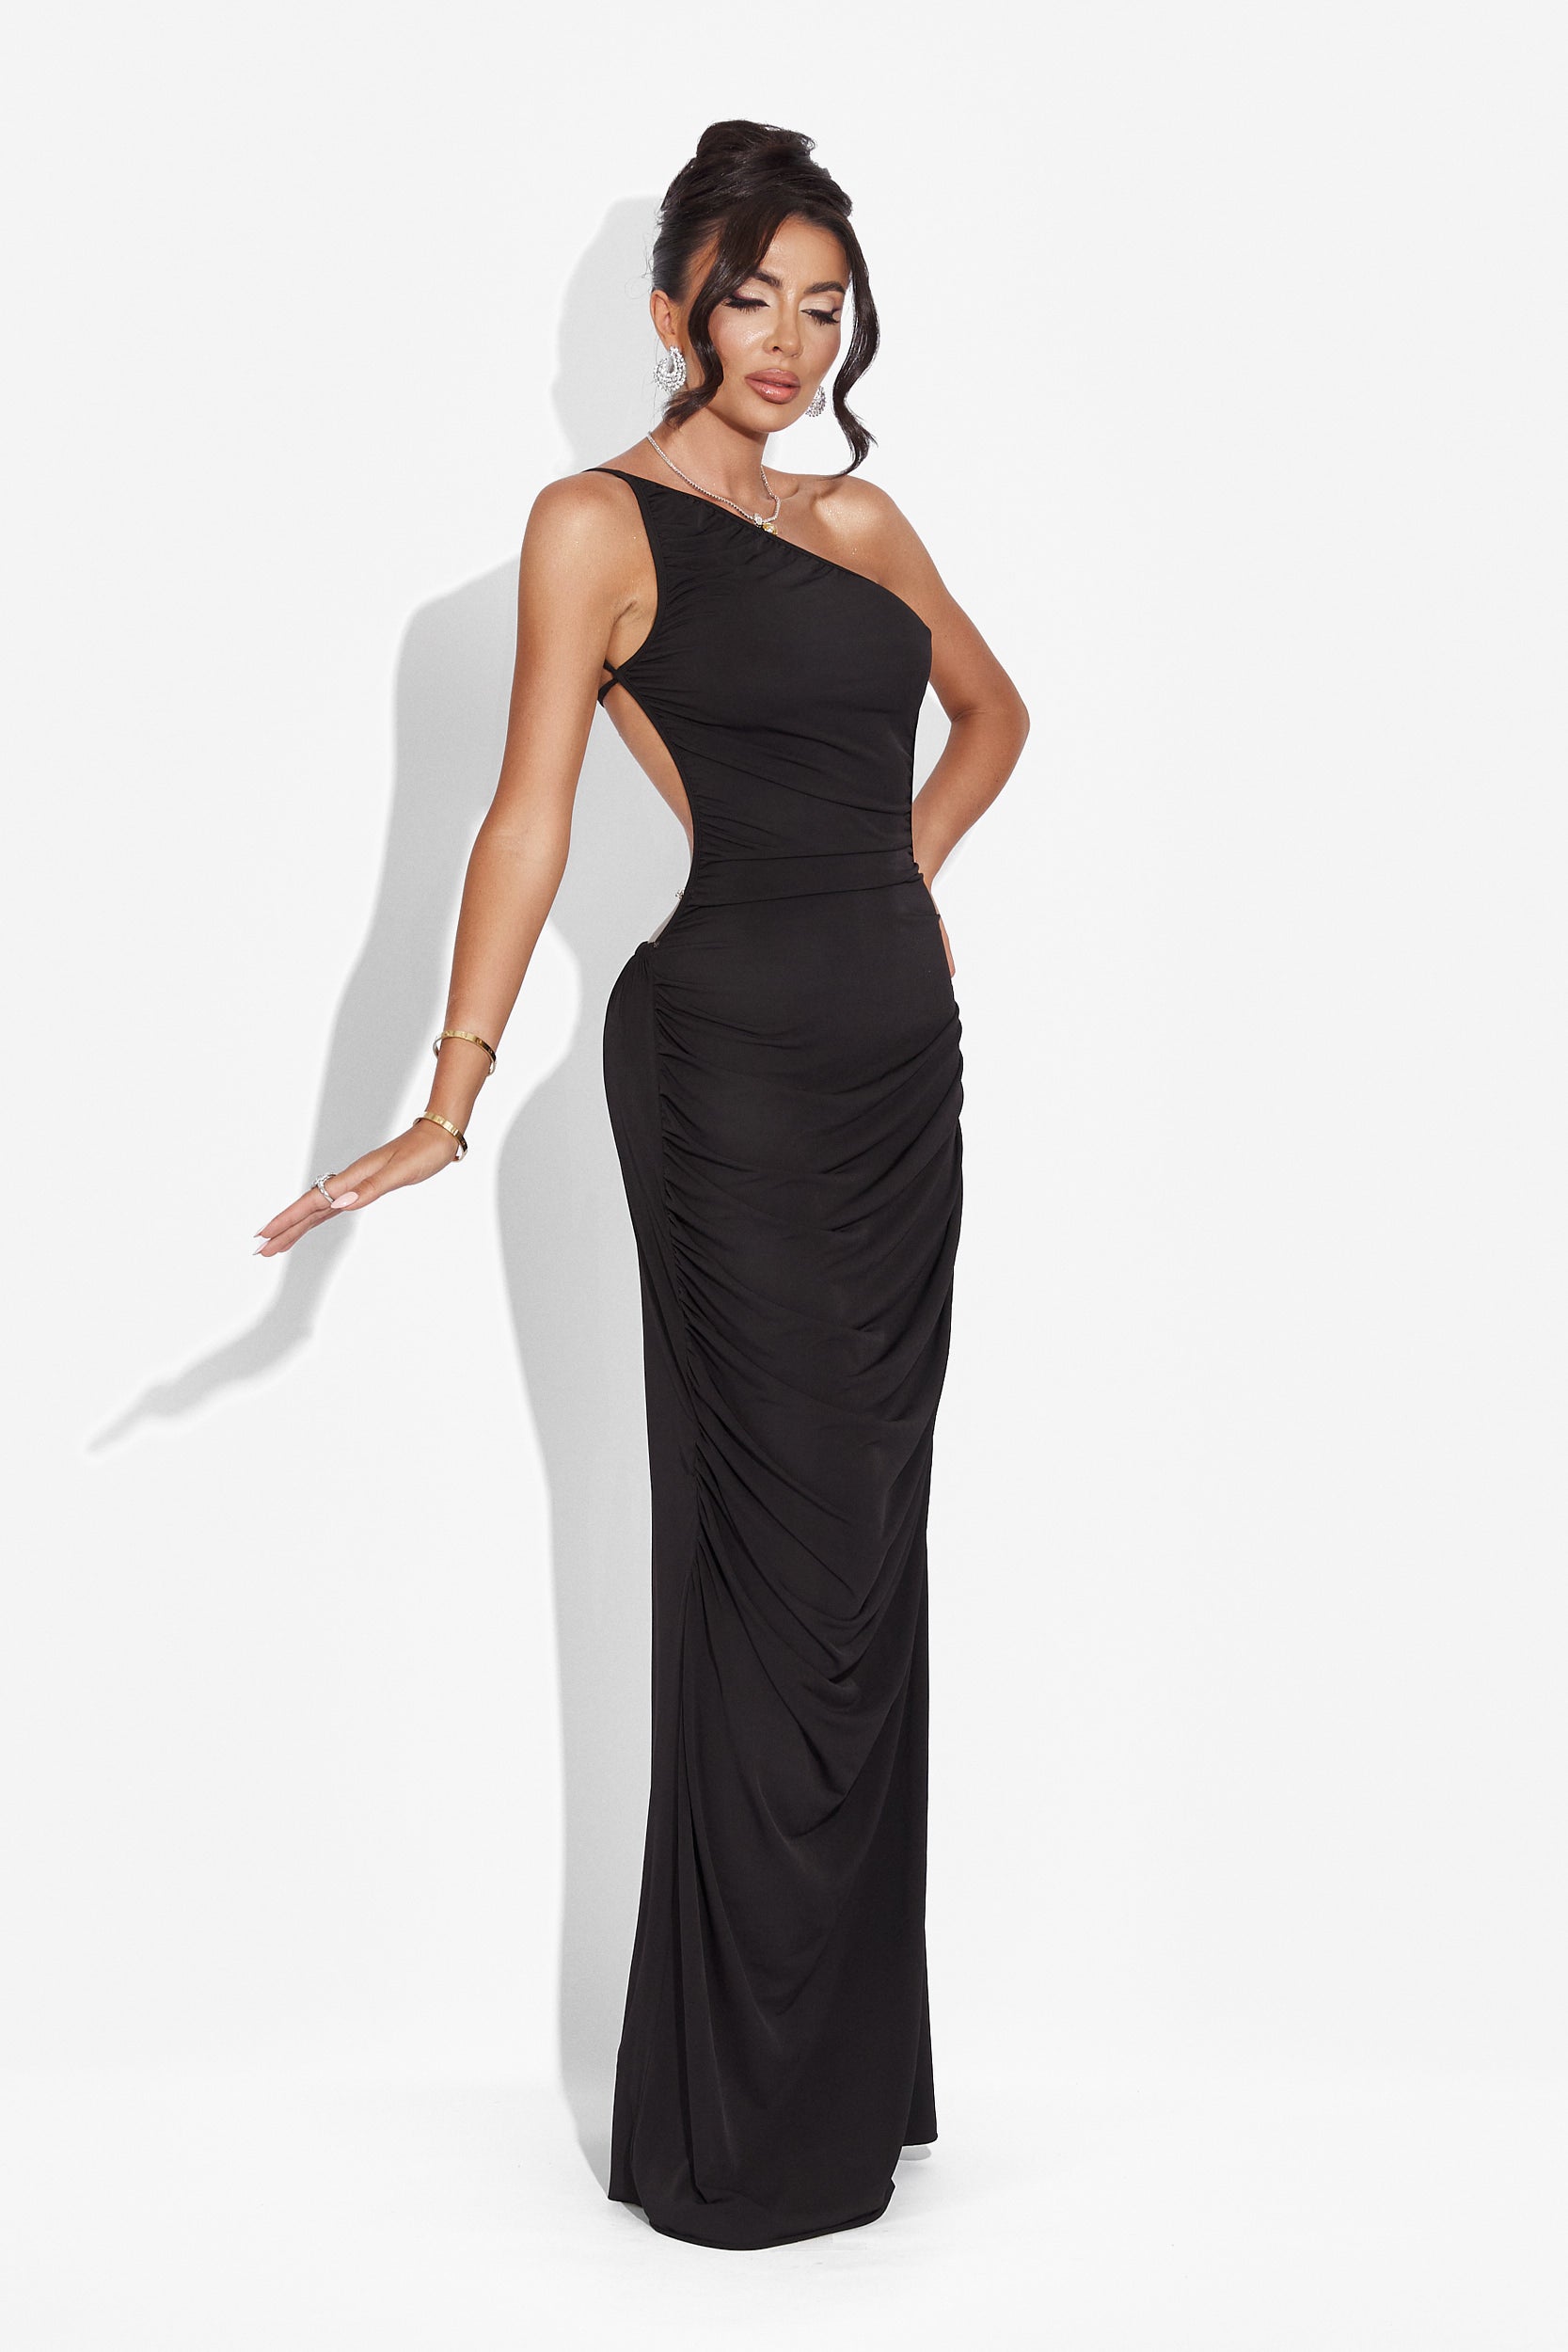 Calvia Bogas hosszú fekete női ruha